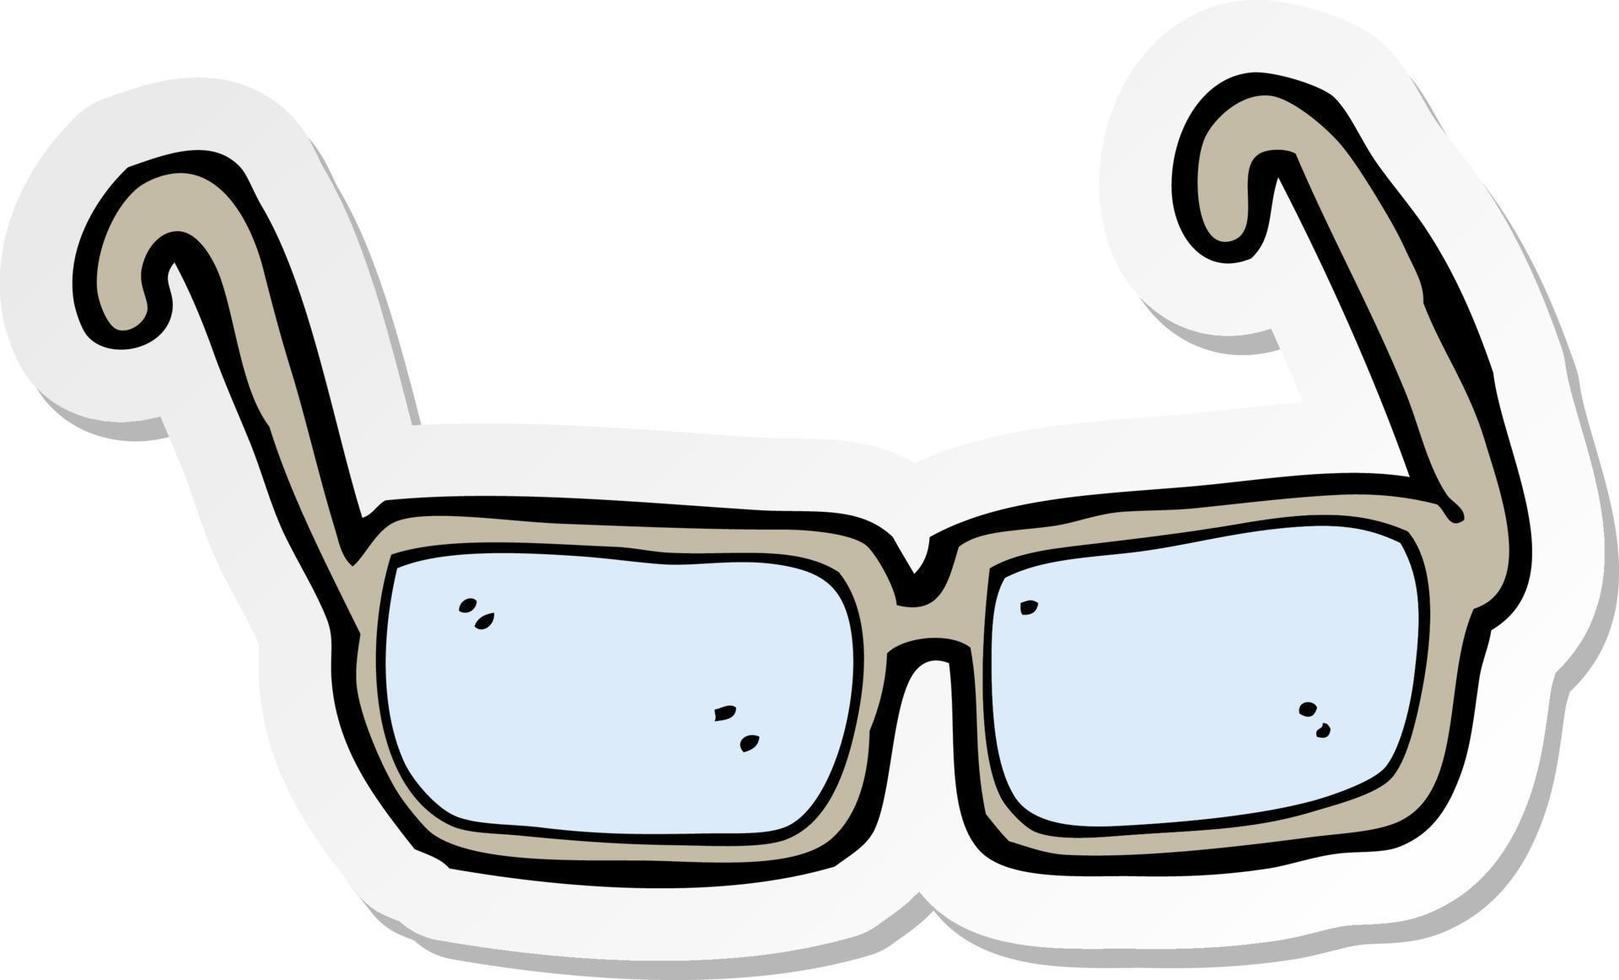 autocollant de lunettes de dessin animé vecteur